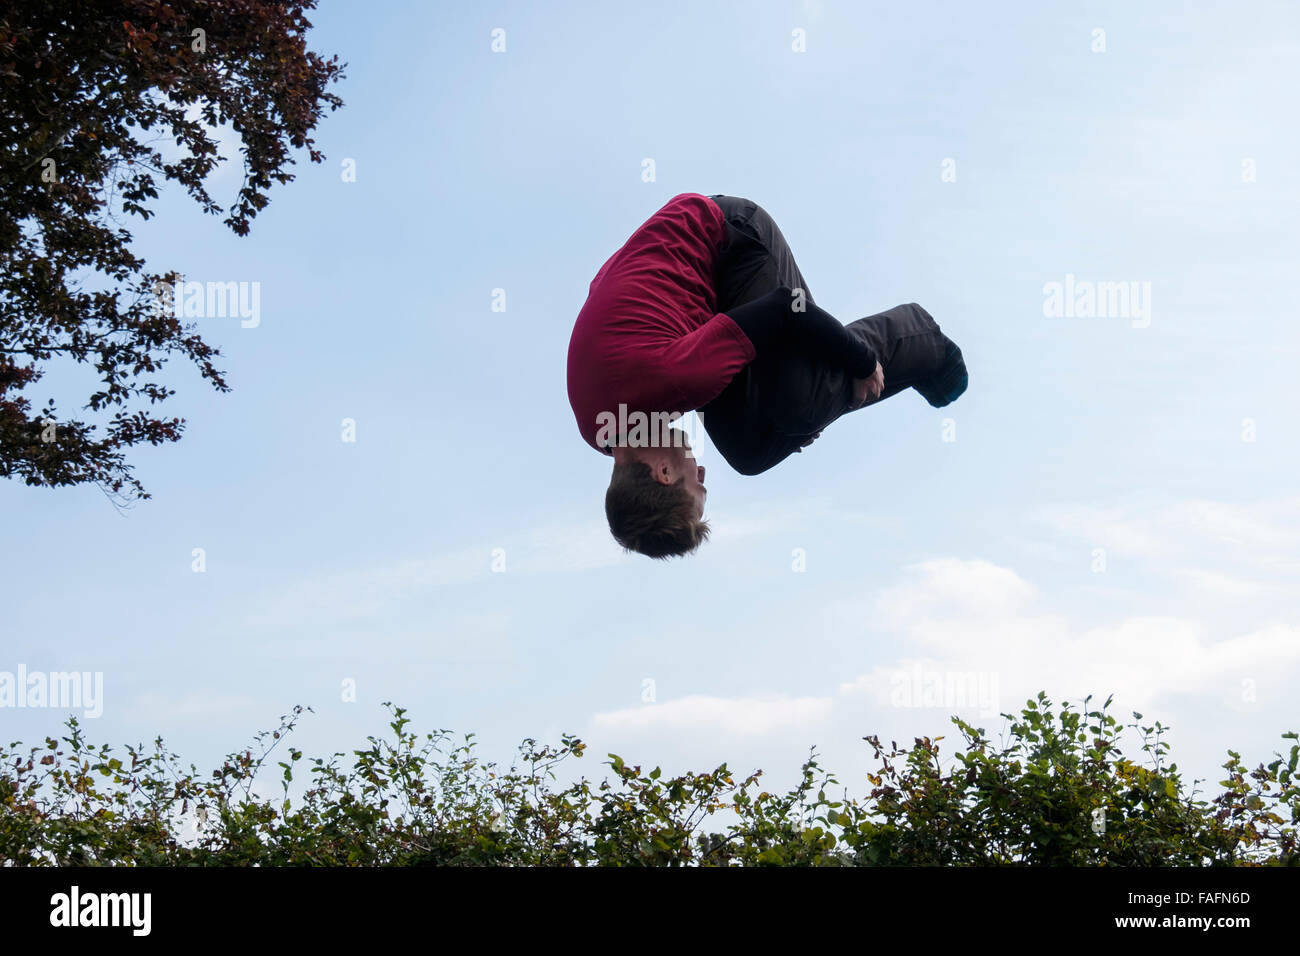 La millenaria uomo su un trampolino capovolto facendo un rollio in avanti capriola a metà in aria al di sopra di una copertura contro il cielo blu. Inghilterra, Regno Unito, Gran Bretagna Foto Stock